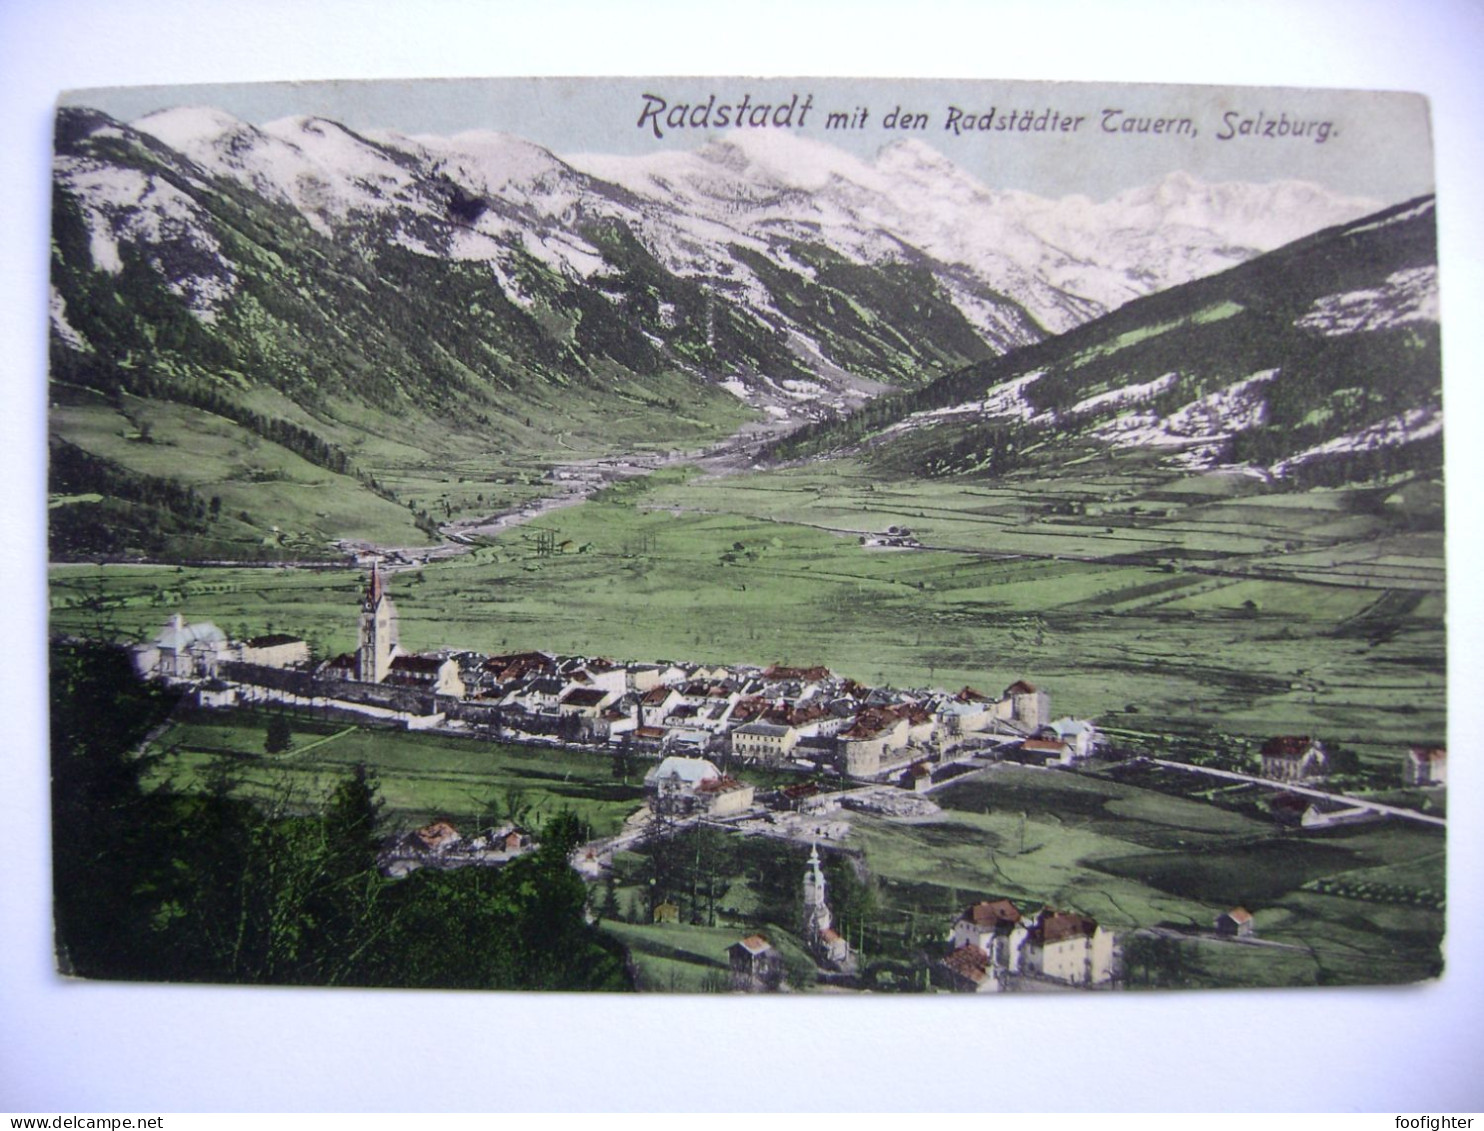 Radstadt Mit Den Rädstadter Tauern, Salzburg - Totalansicht - Ca 1910s - Radstadt